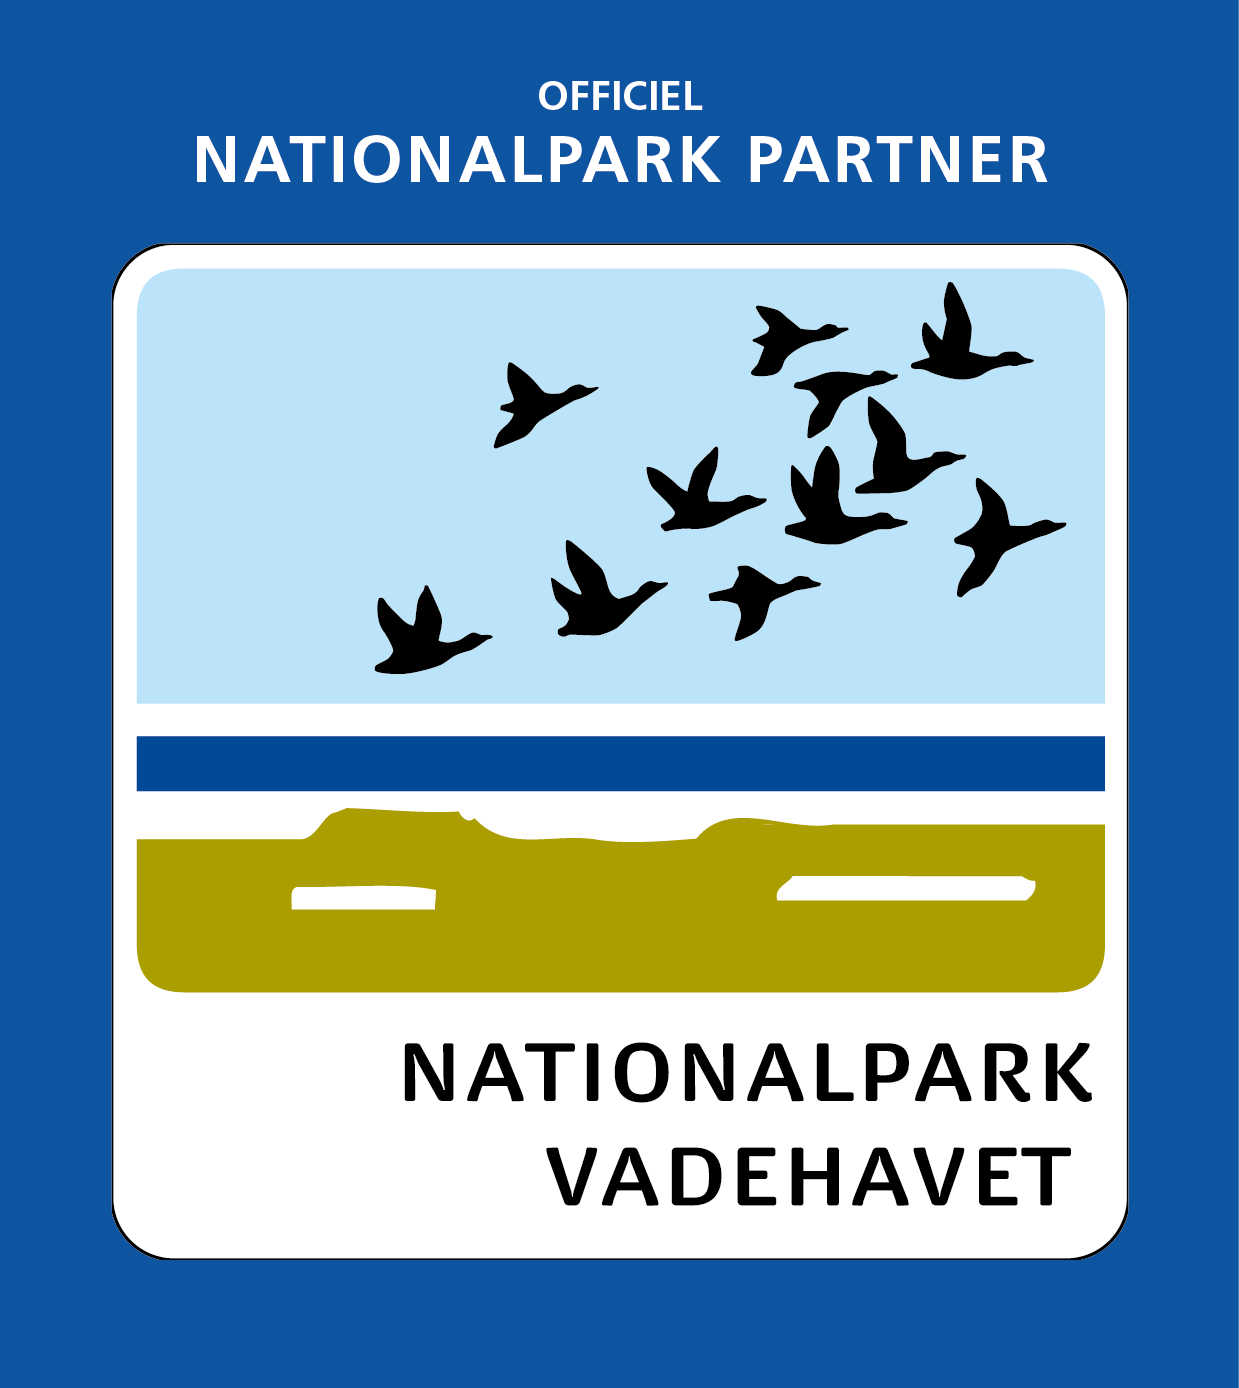 Nationalpark Vadehavet Partner